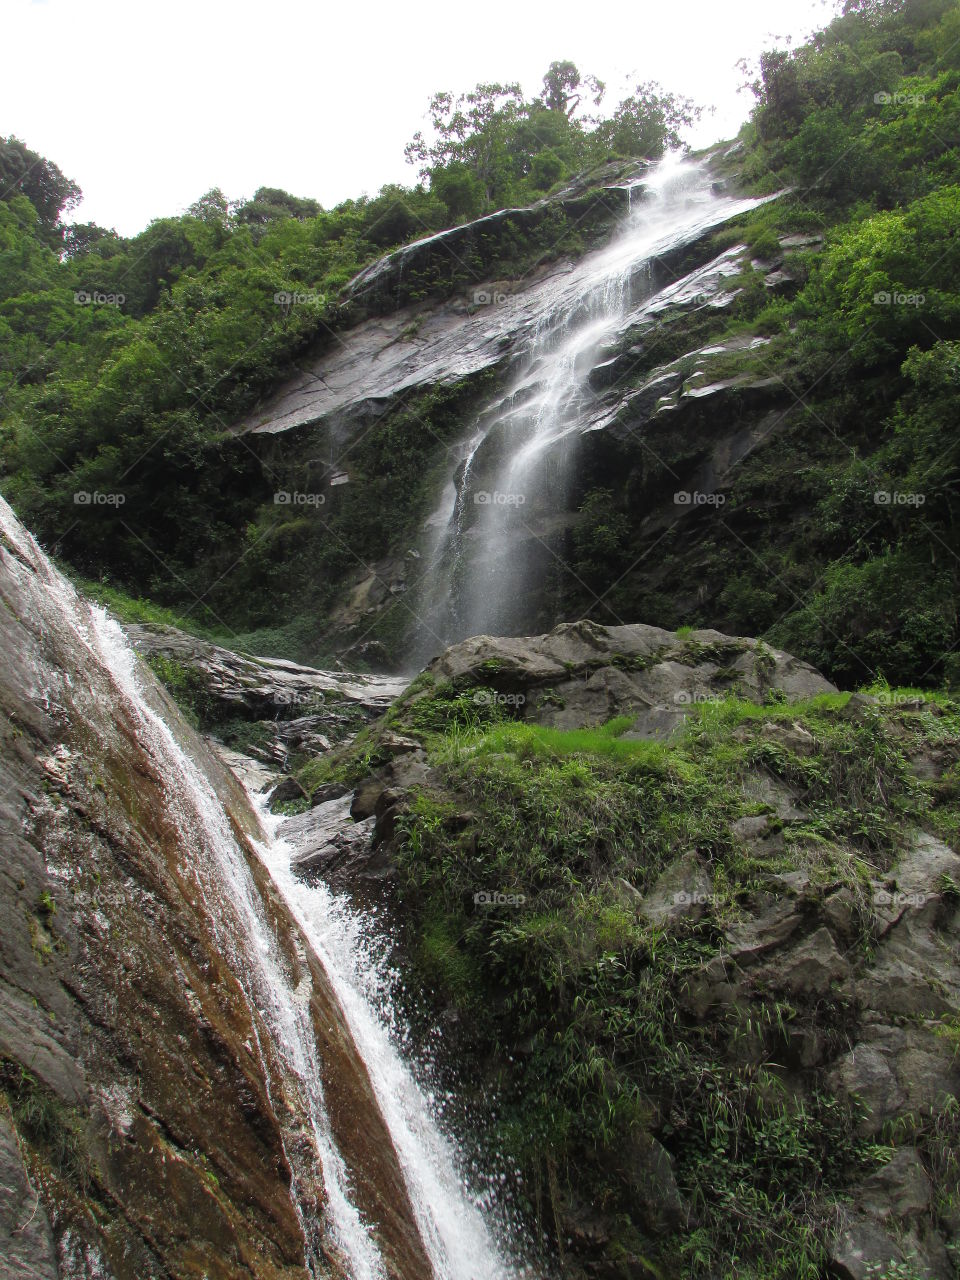 K2 Water Falls